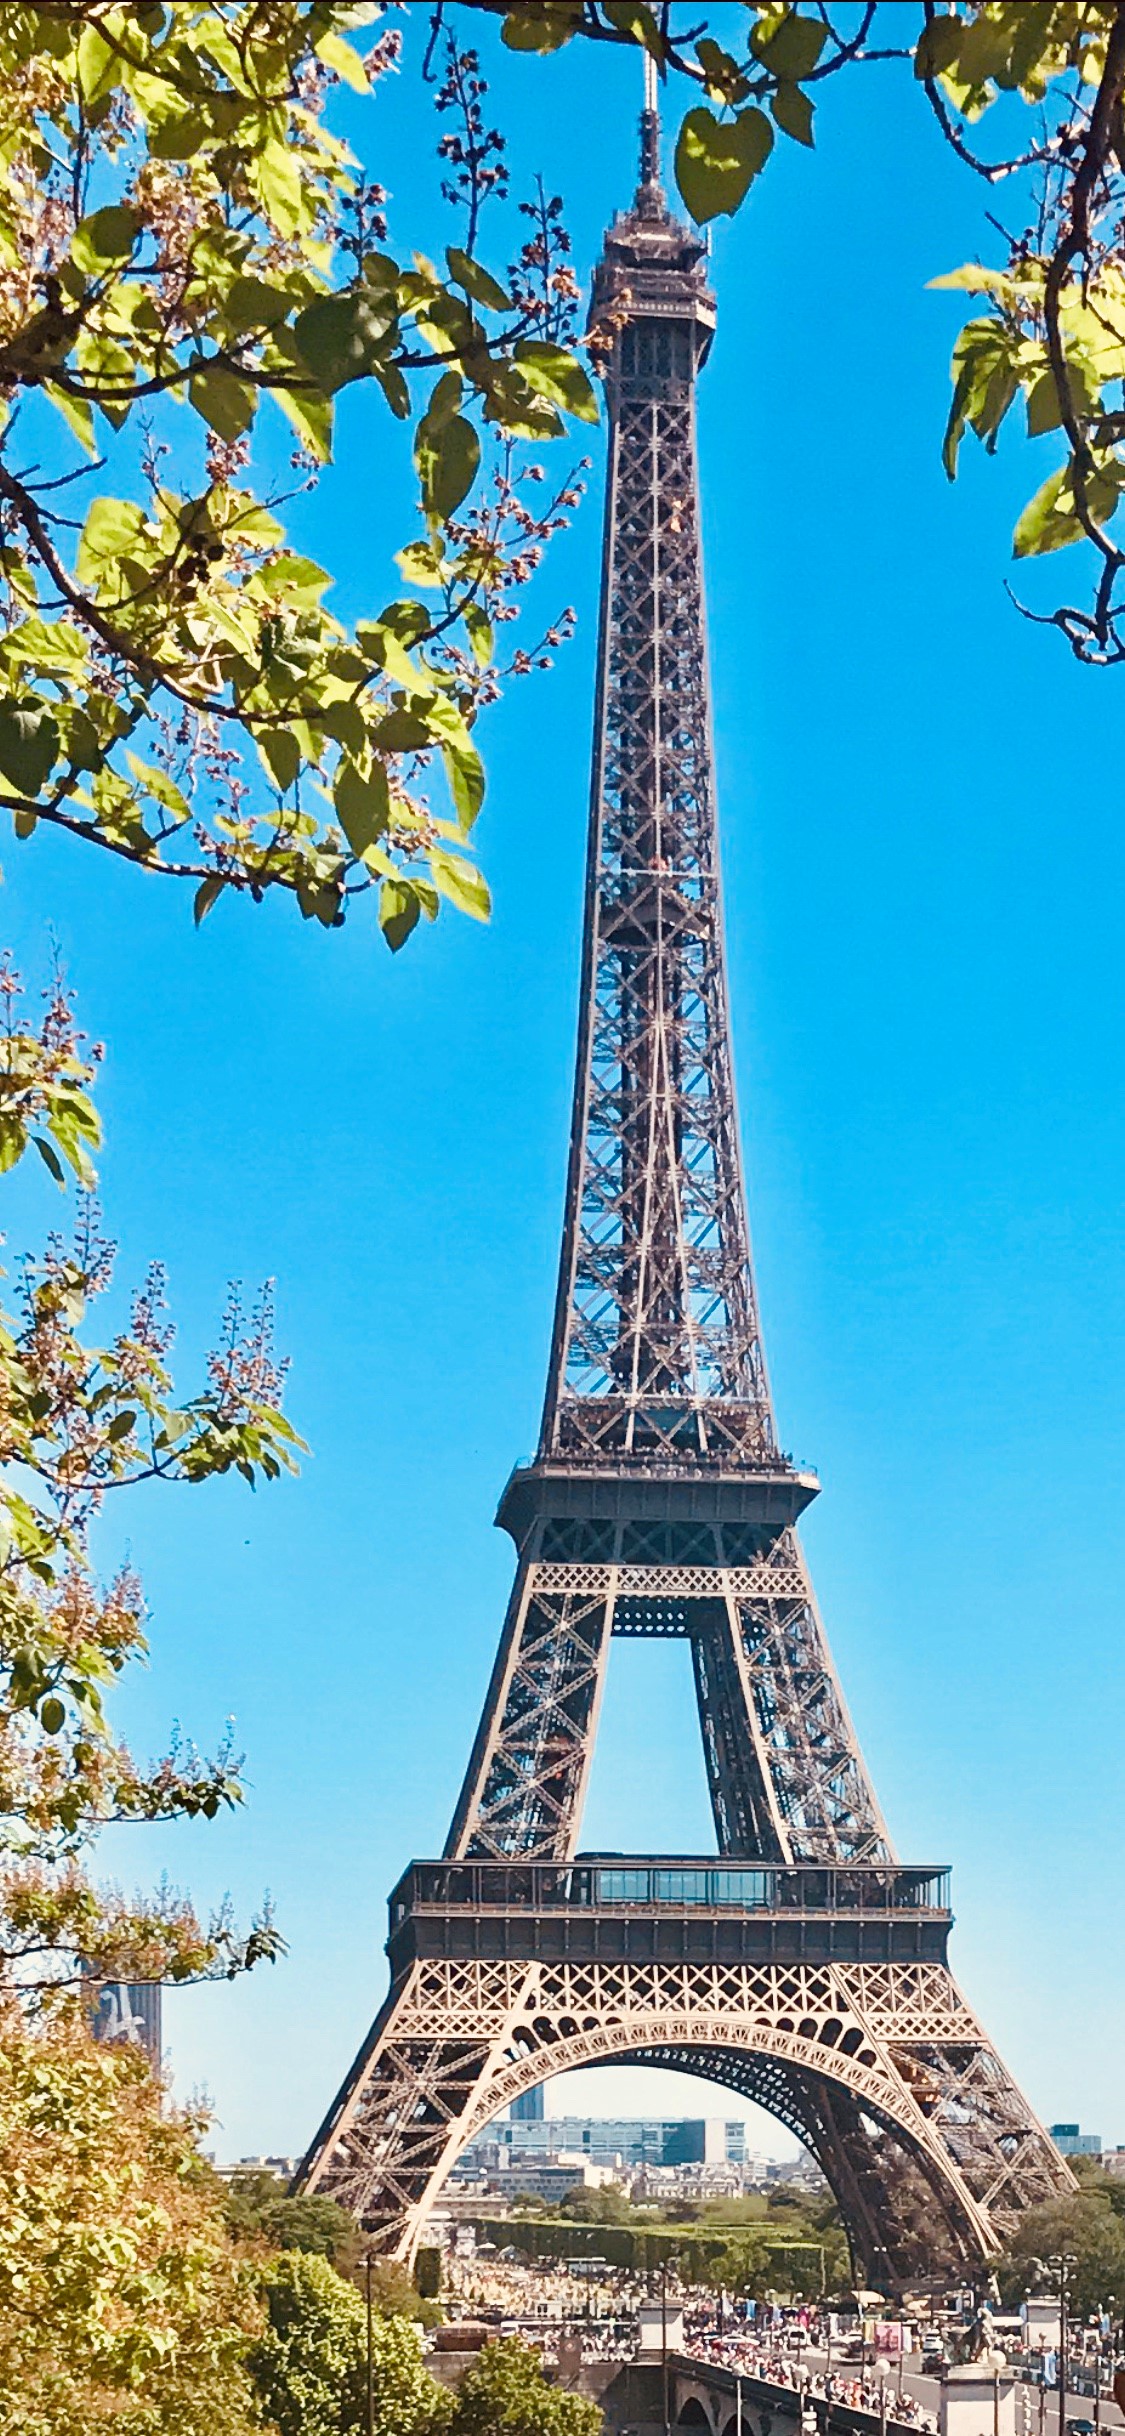 اخلاء برج ايفل في باريس بعد تهديد بوجود قنبلة